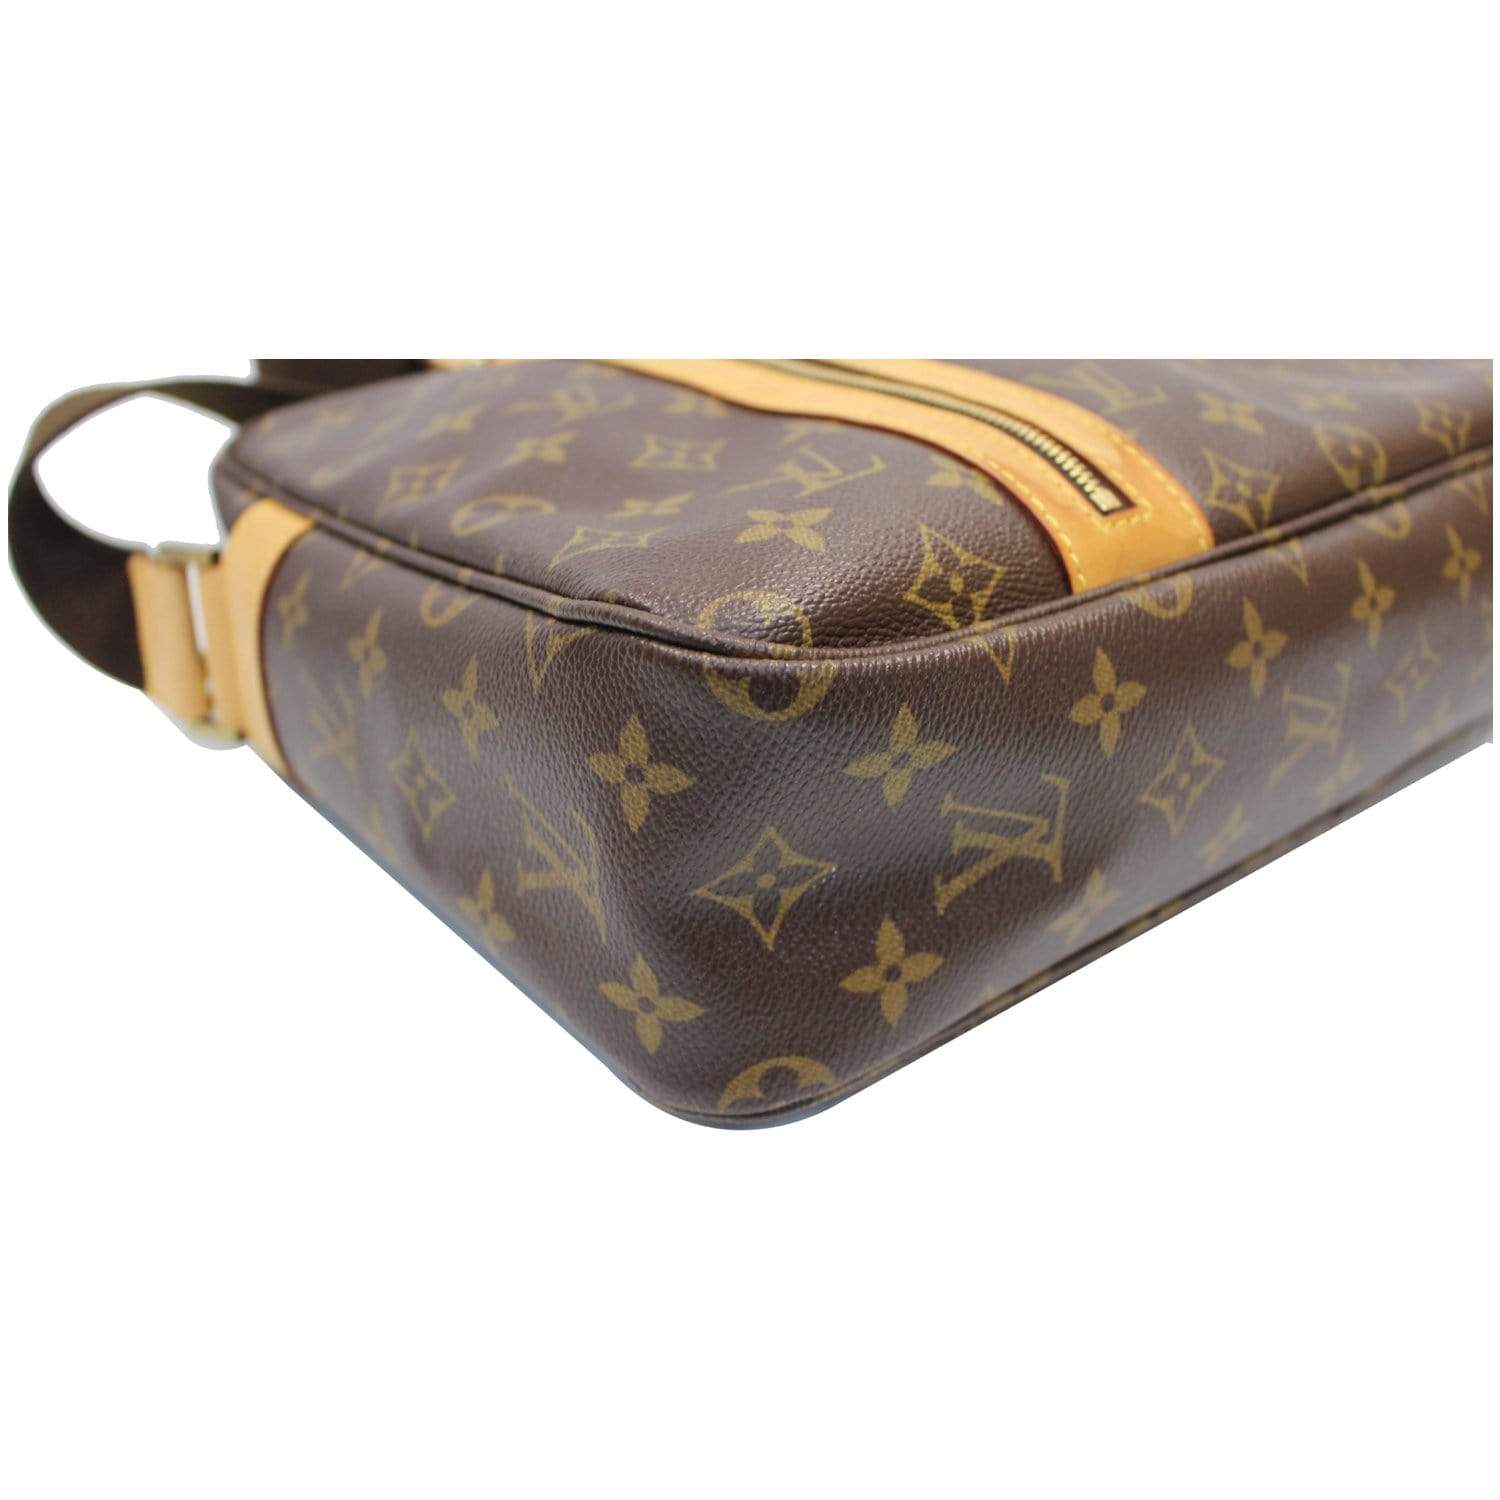 Louis Vuitton Bosphore Travel Laptop Messenger Bag 